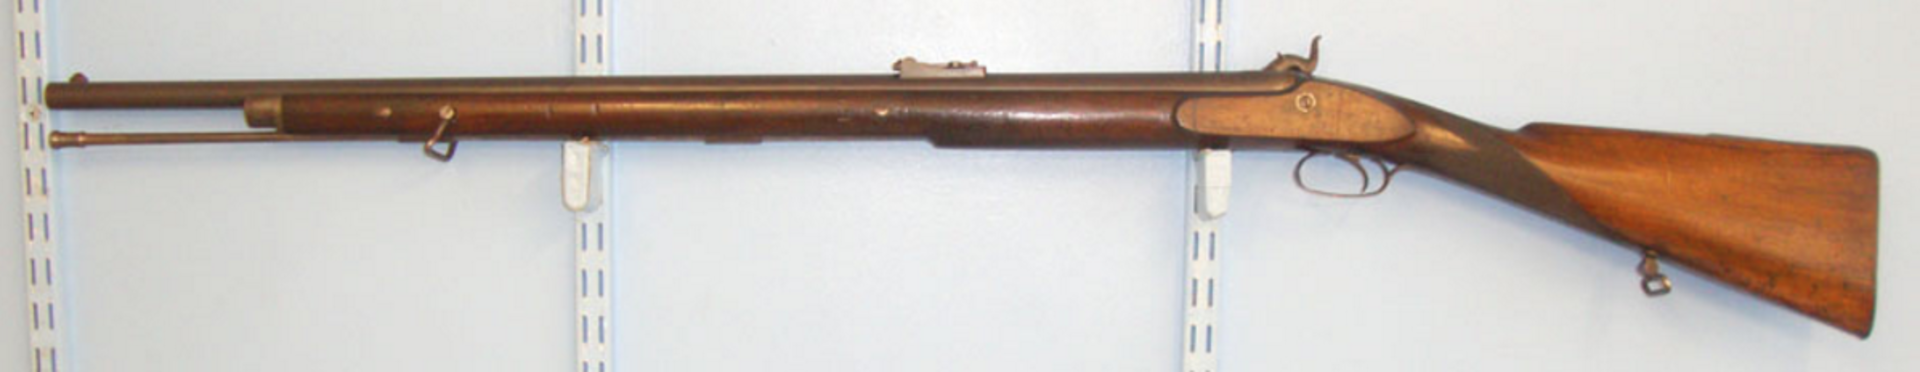 Victorian British Volunteer/Militia Sgt’s/NCO’s Private Purchase 577 Calibre Percussion Short Rifle